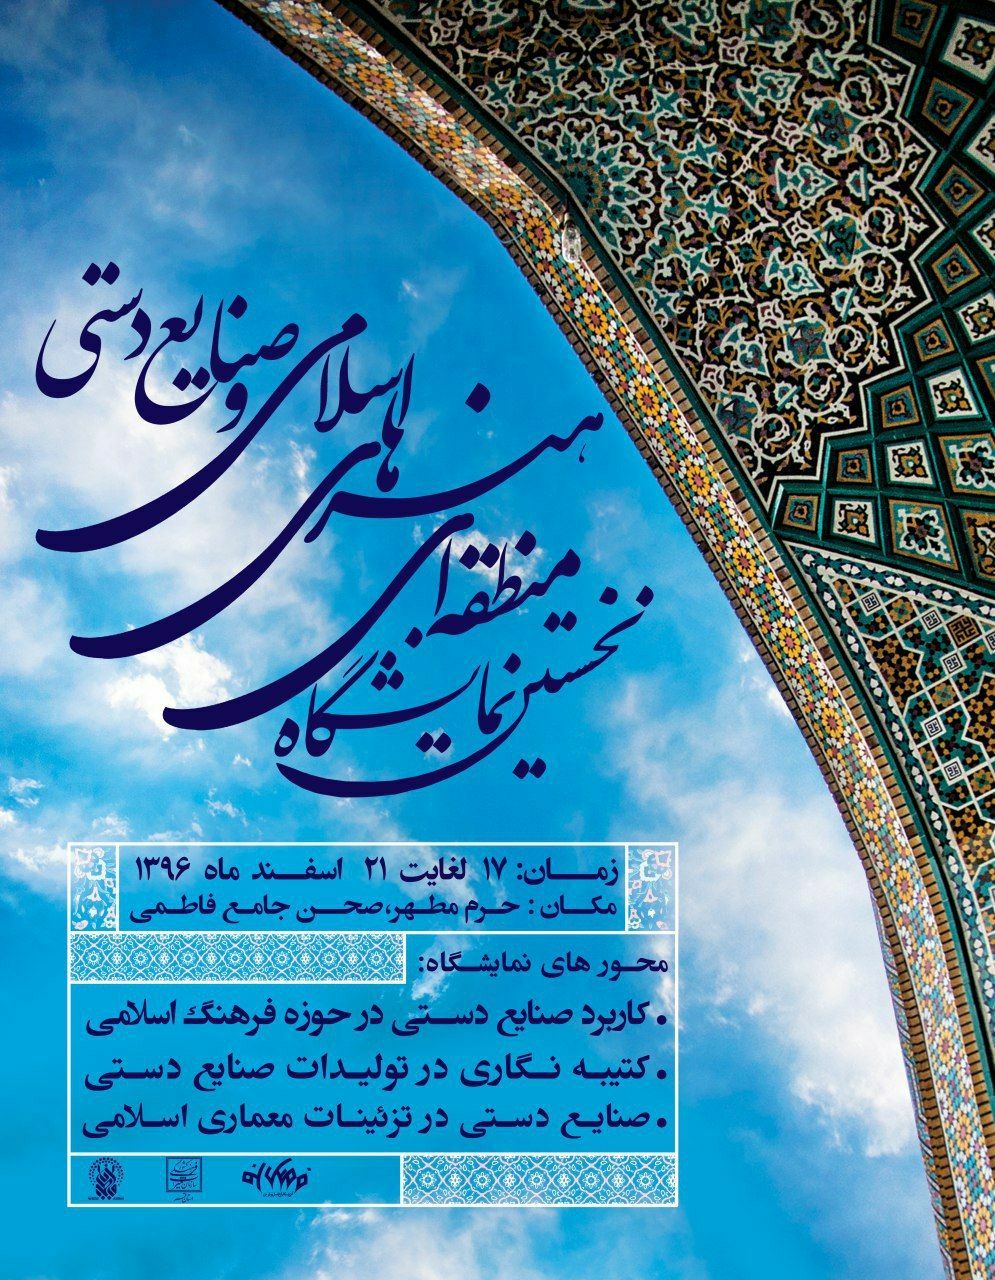 نمایشگاه منطقه ای هنرهای اسلامی و صنایع دستی در قم برپا شد